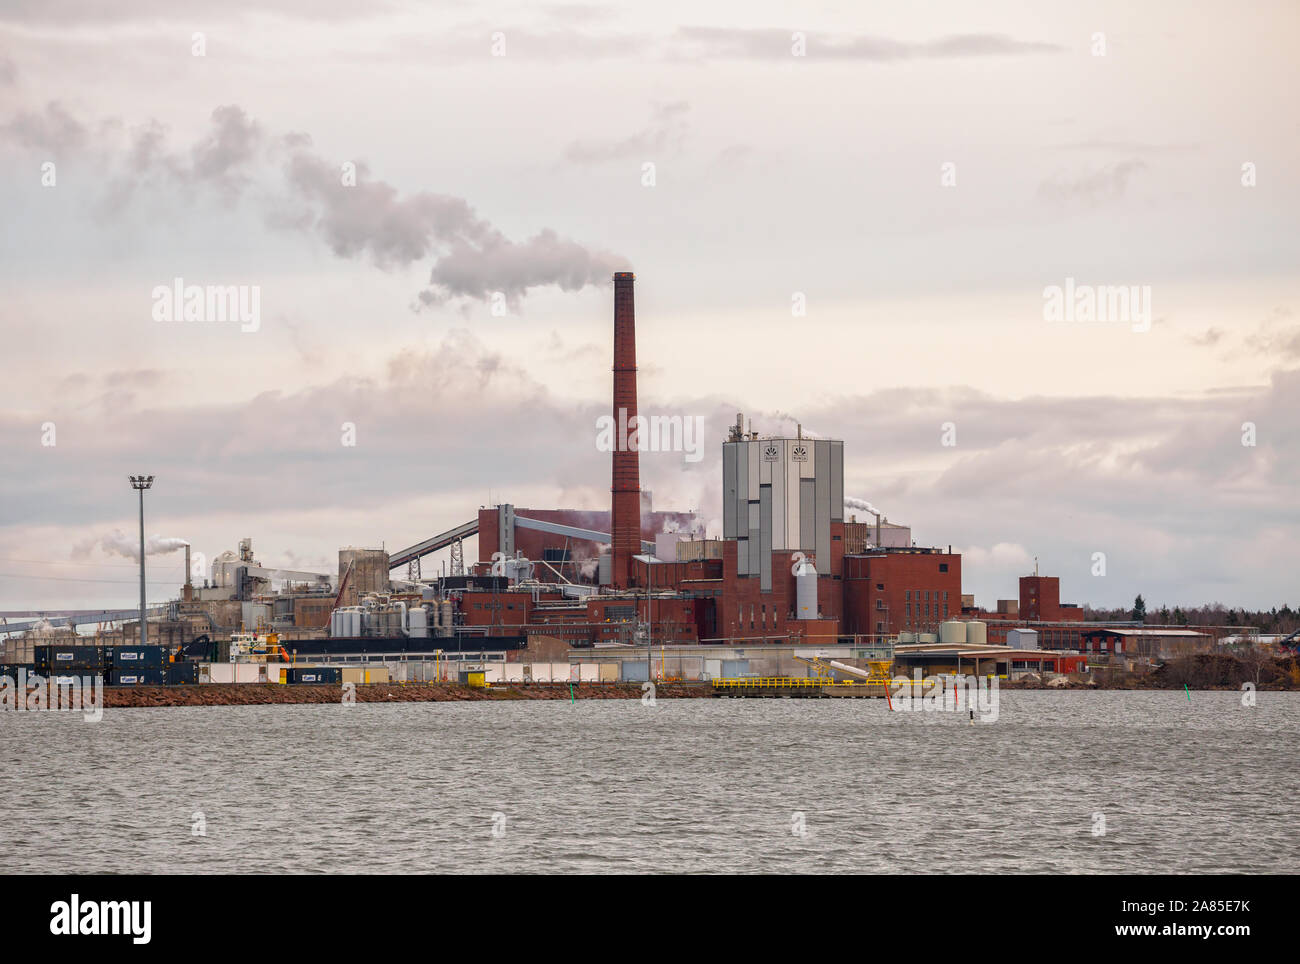 KOTKA, FINLANDE - le 02 novembre 2019 : Sunila de fabriques de pâtes et papiers Stora Enso Oyj corporation sur les rives du golfe de Finlande. Bâtiment industriel en brique rouge Banque D'Images